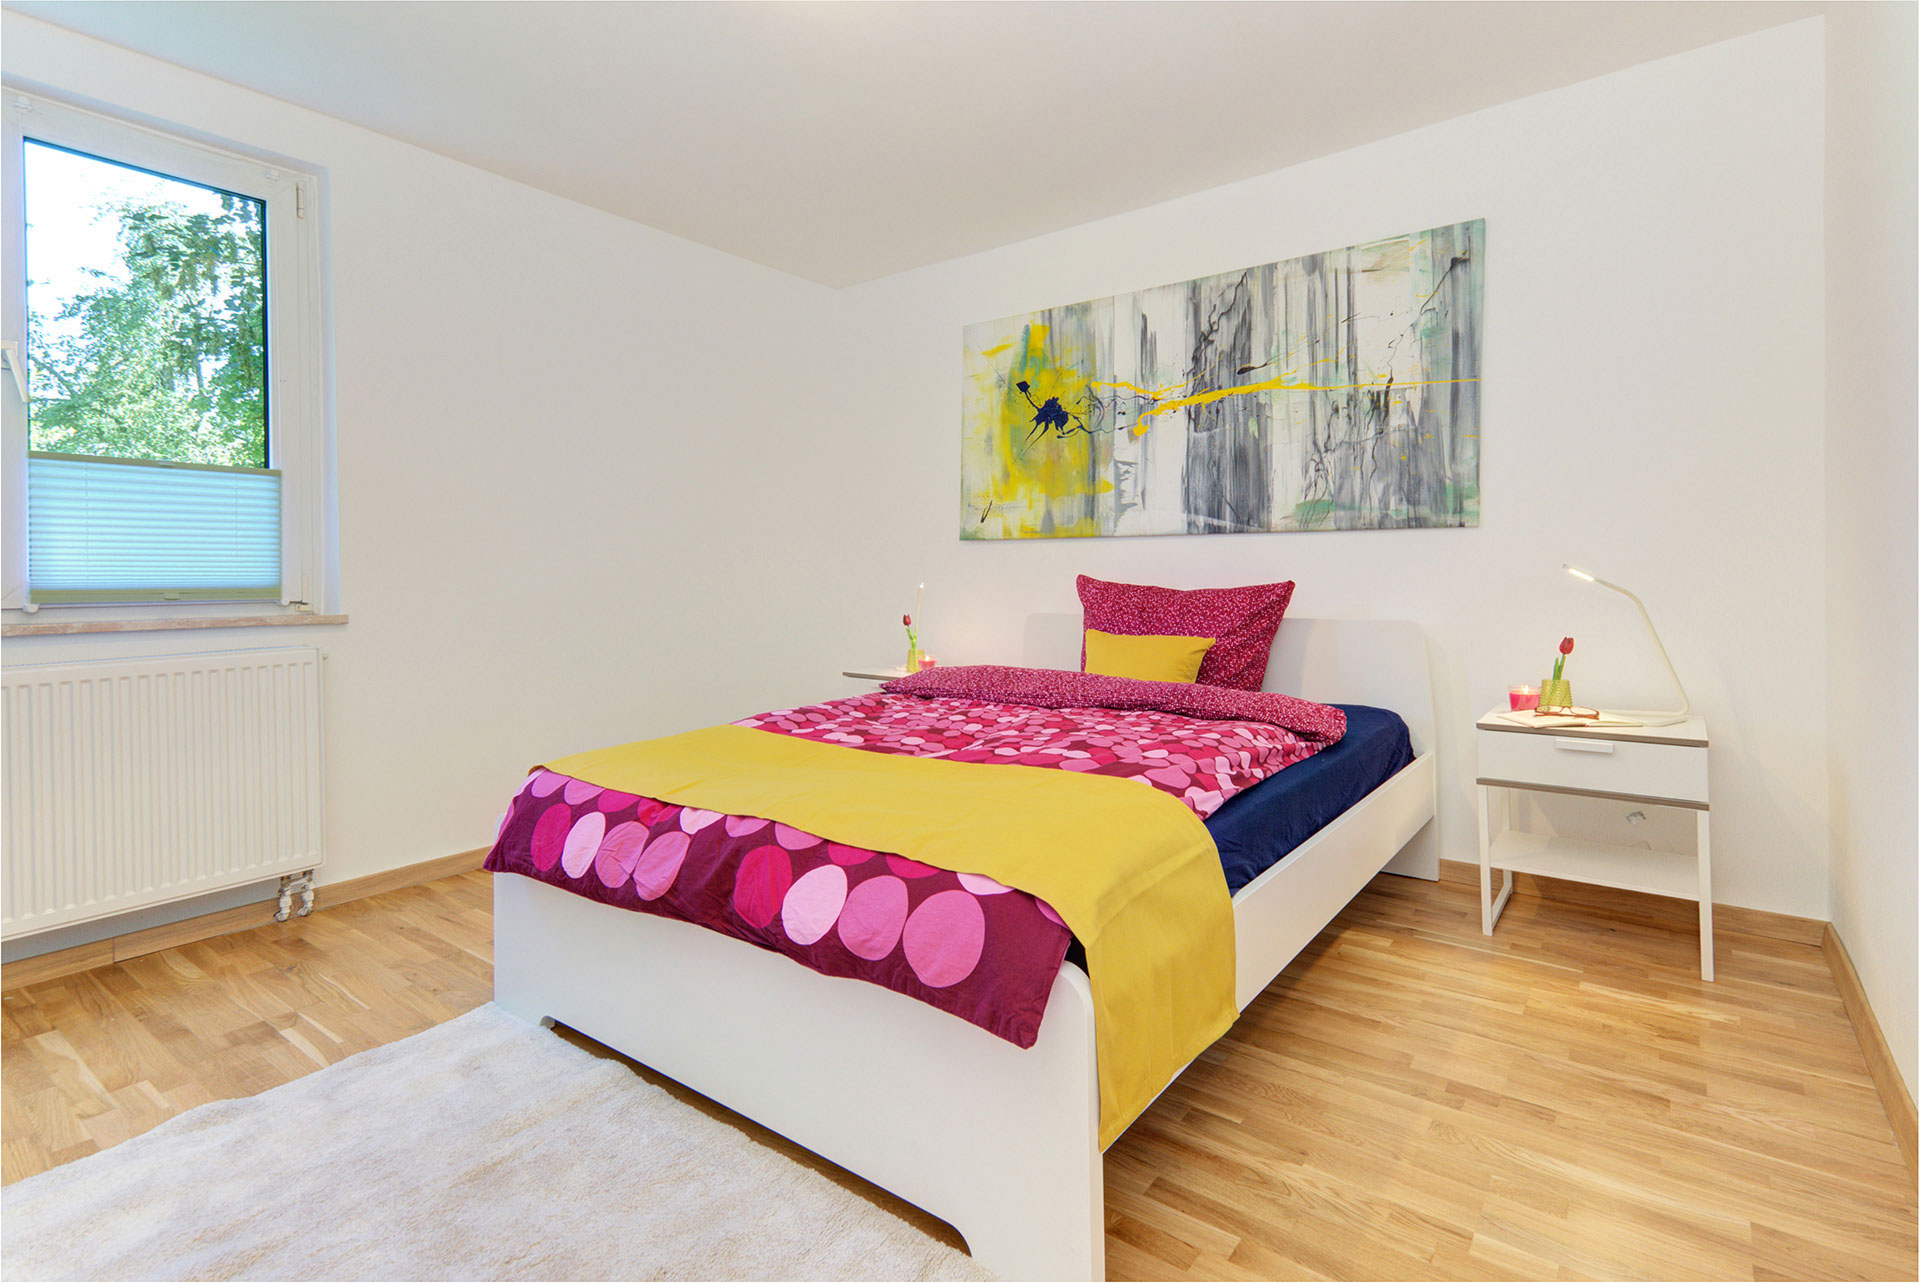 apartment fotografieren schlafzimmer okkerfarbener bettläufer und kissen auf lila bettwäsche